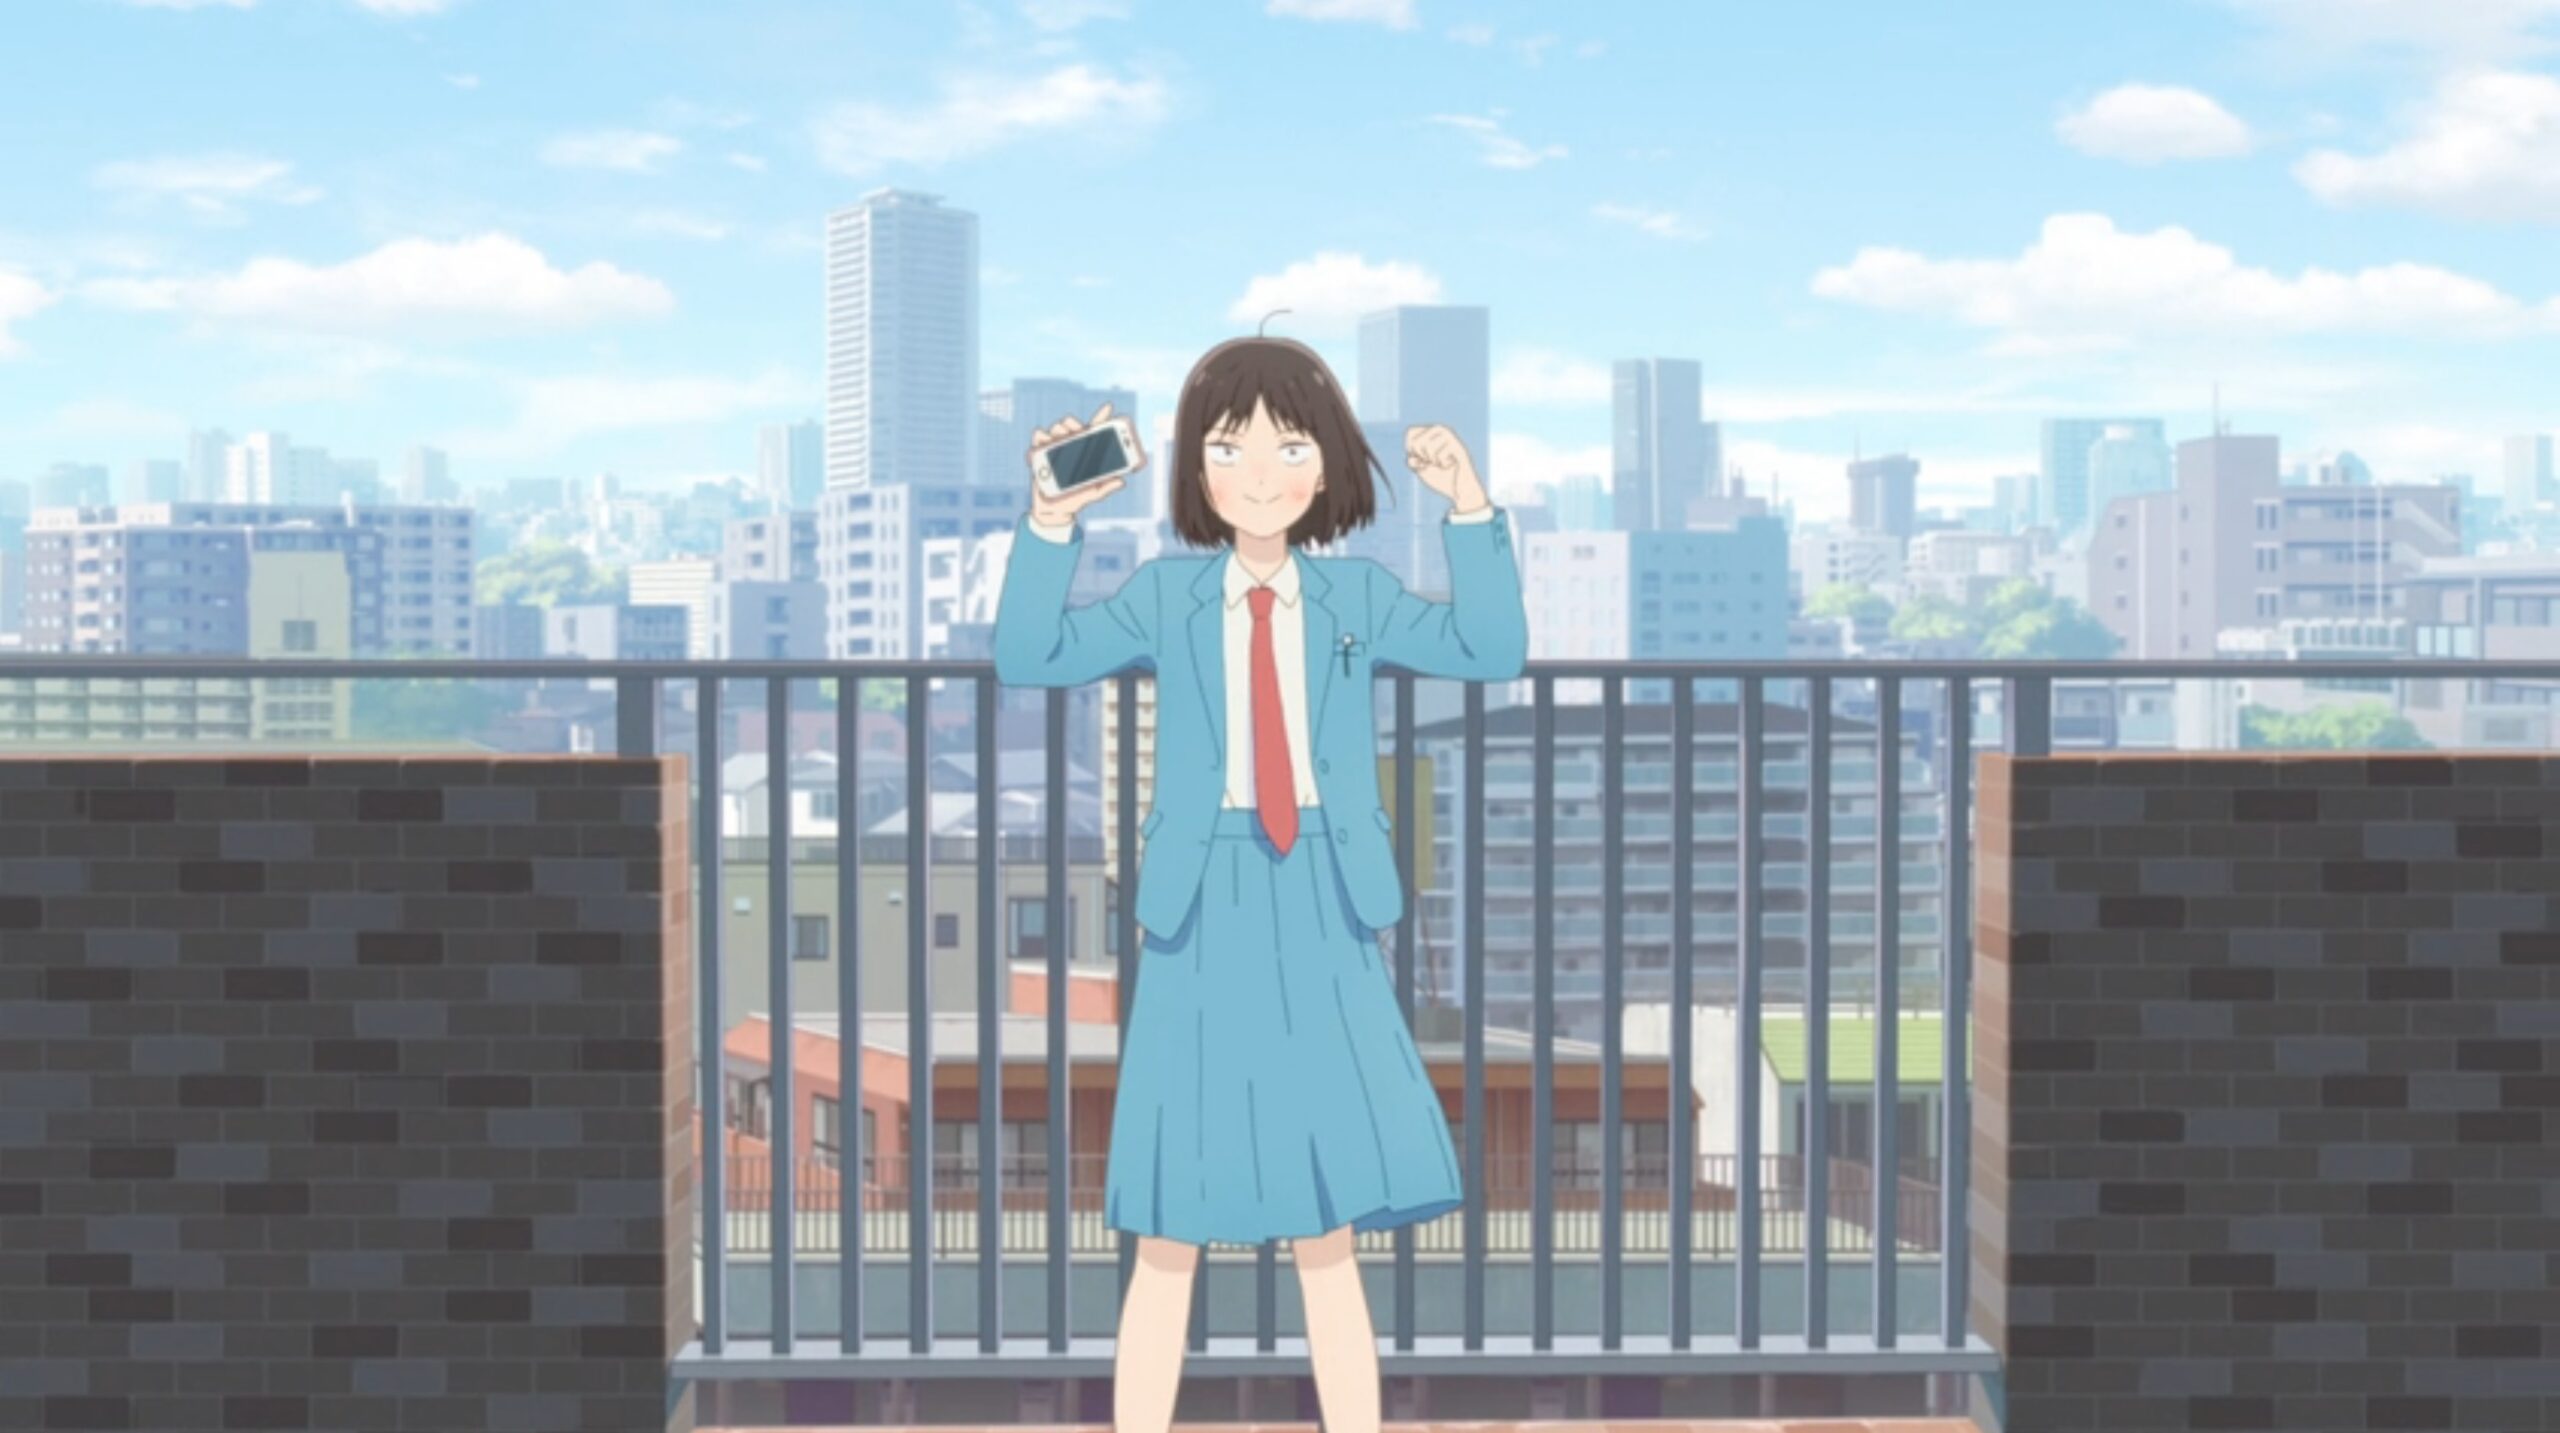 Skip to Loafer - Mangá deve ter um anúncio importante em novembro - Anime  United